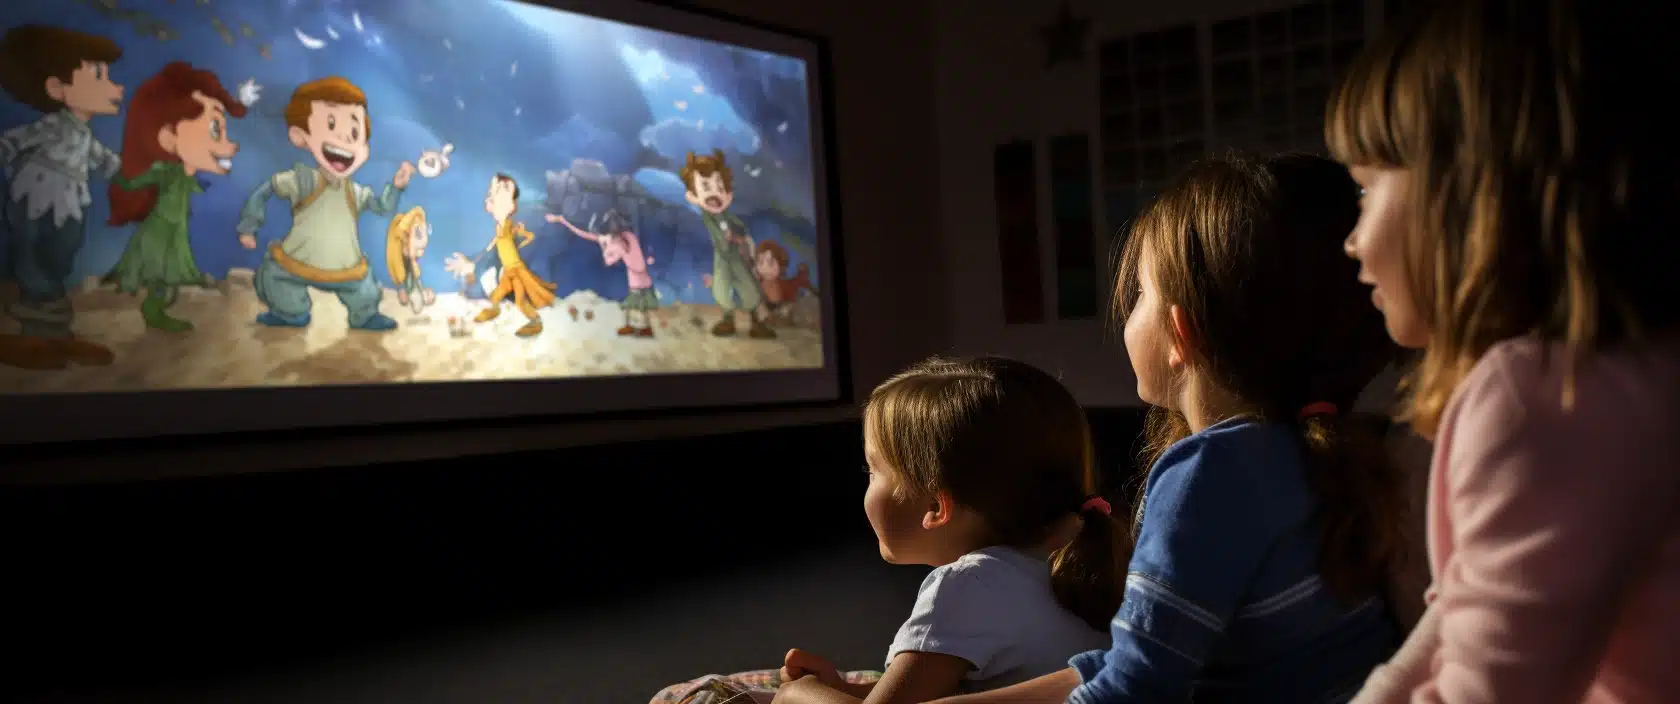 Projecteur Tikino : contes animés et enchantement pour enfants